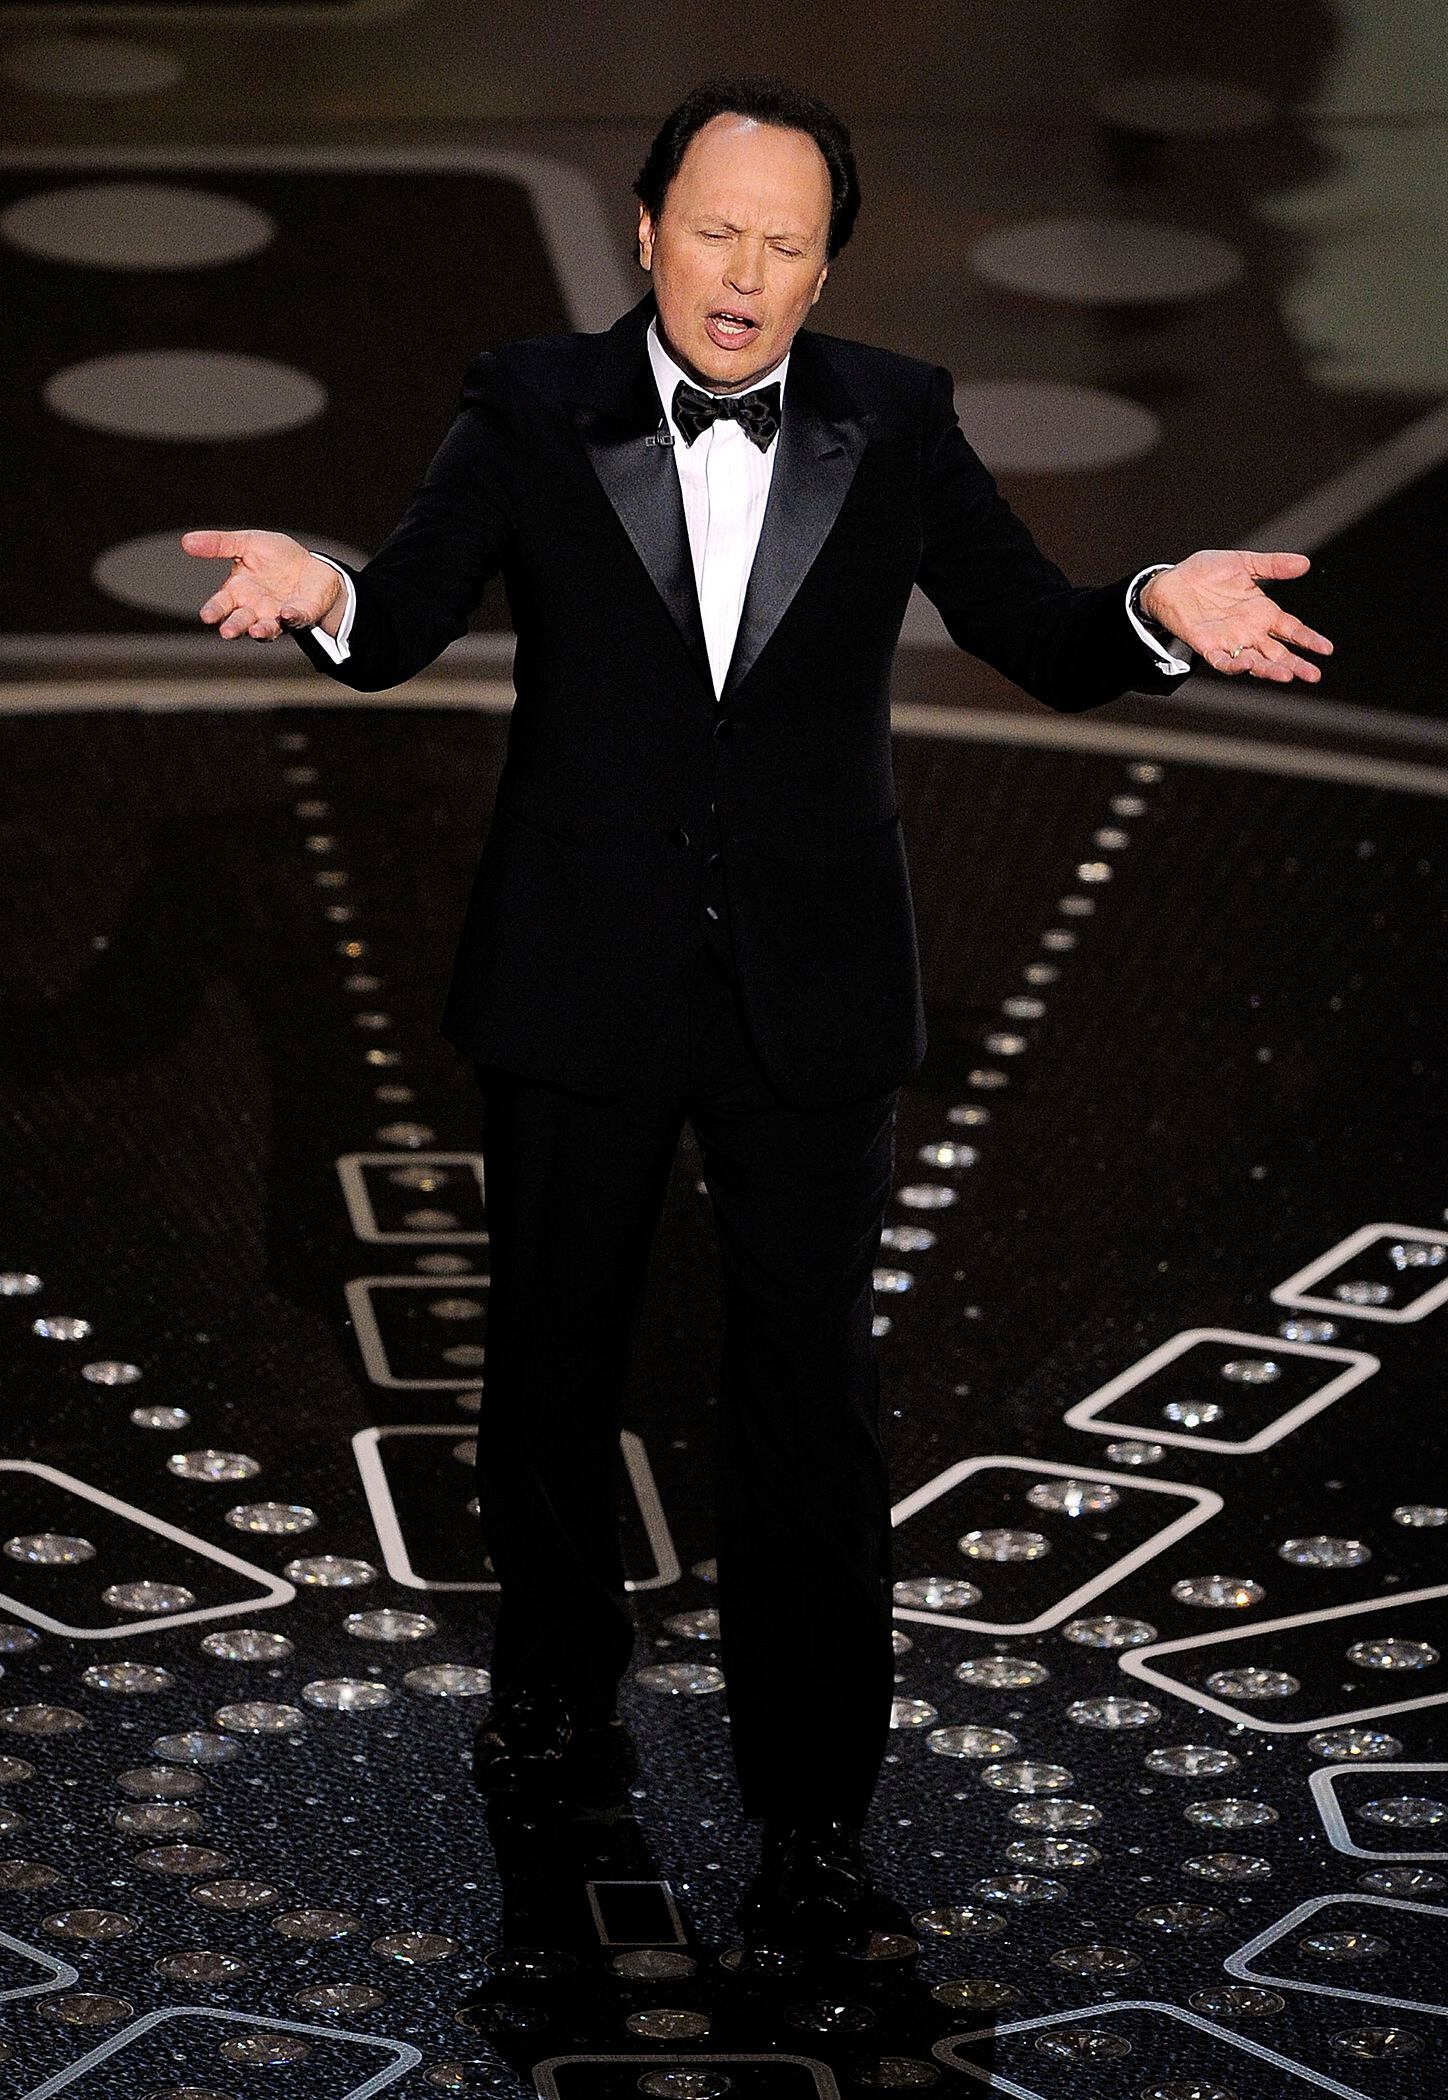 ARCHIVO- El actor y comediante Billy Crystal habla en su papel como anfitrión de la 83a entrega de los Premios de la Academia en Los Angeles el 27 de febrero de 2011. Crystal ha sido anfitrión de los Oscar en nueve ocasiones. (Foto AP/Mark J. Terrill, archivo)